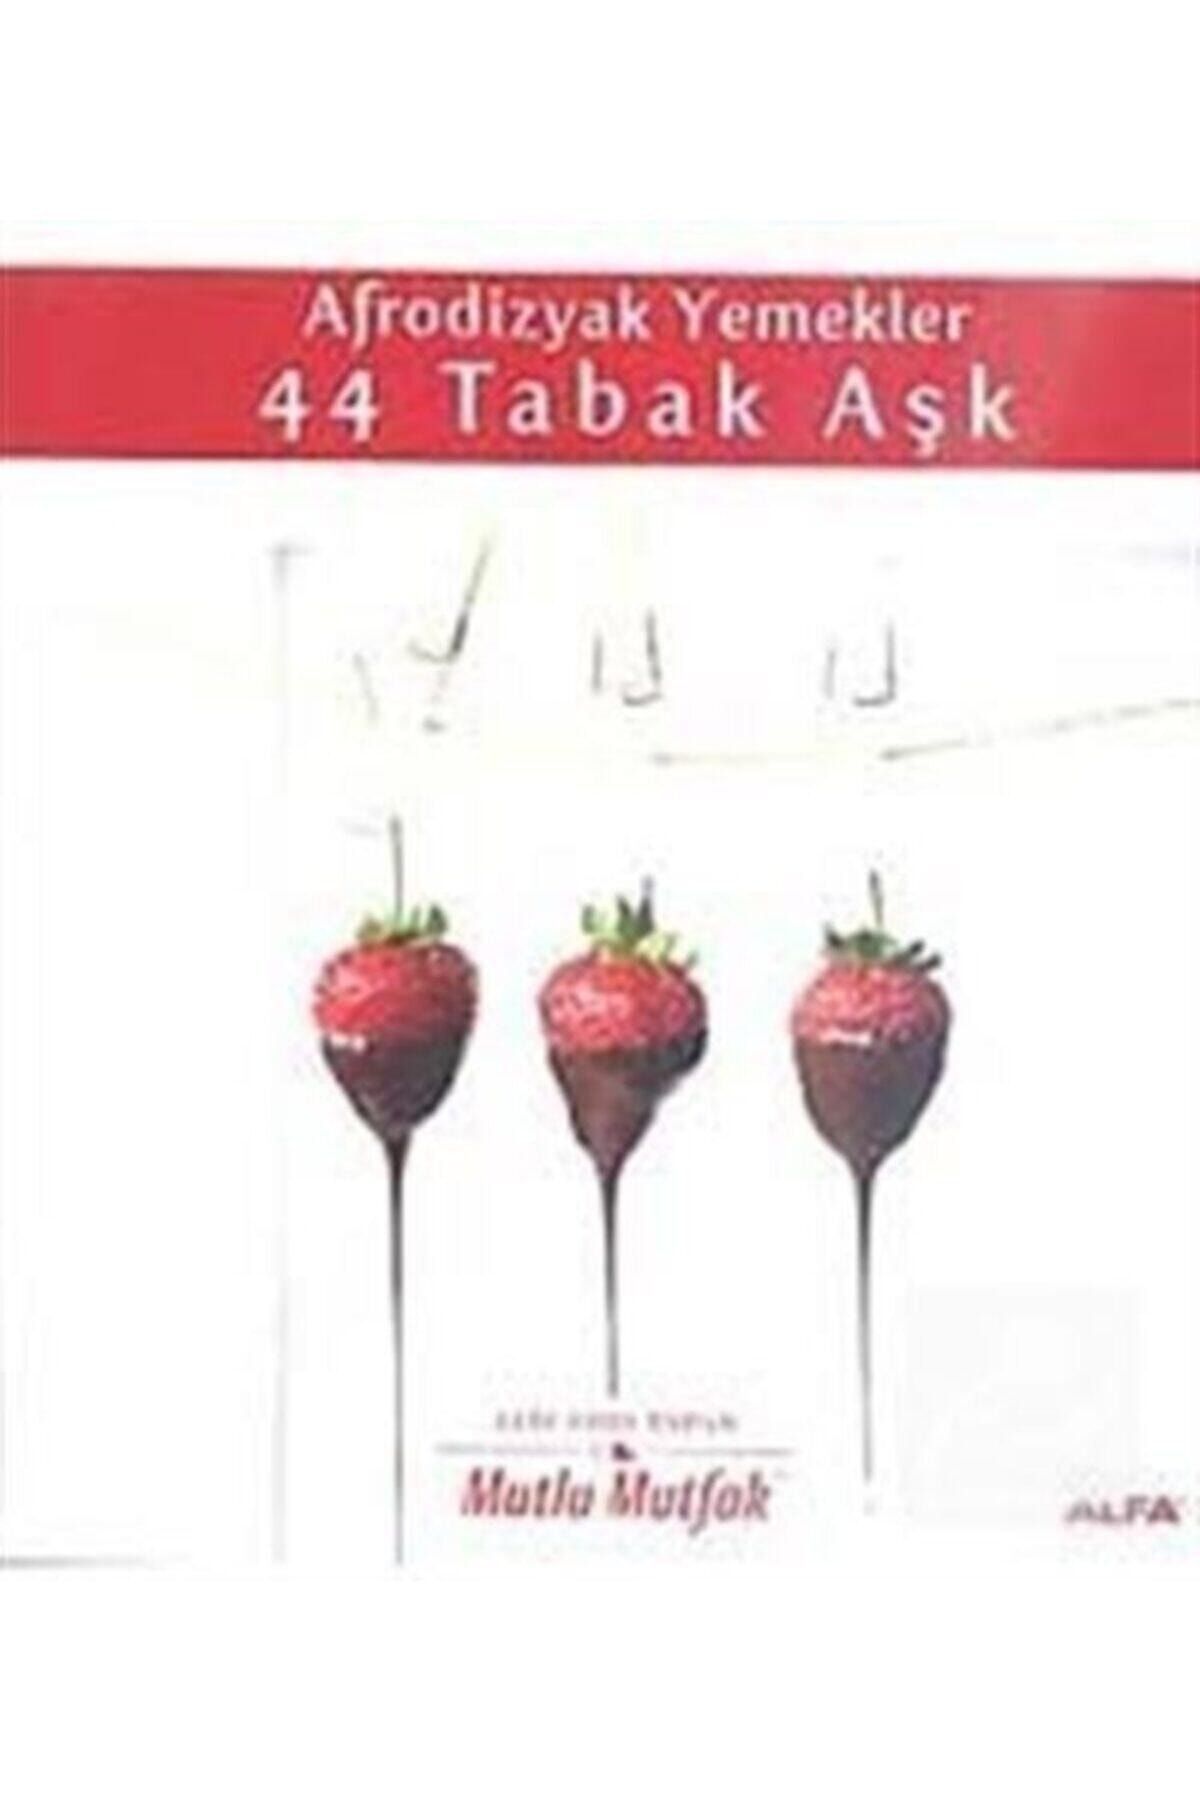 Alfa Yayınları Afrodizyak Yemekler 44 Tabak Aşk & Mutlu Mutfak